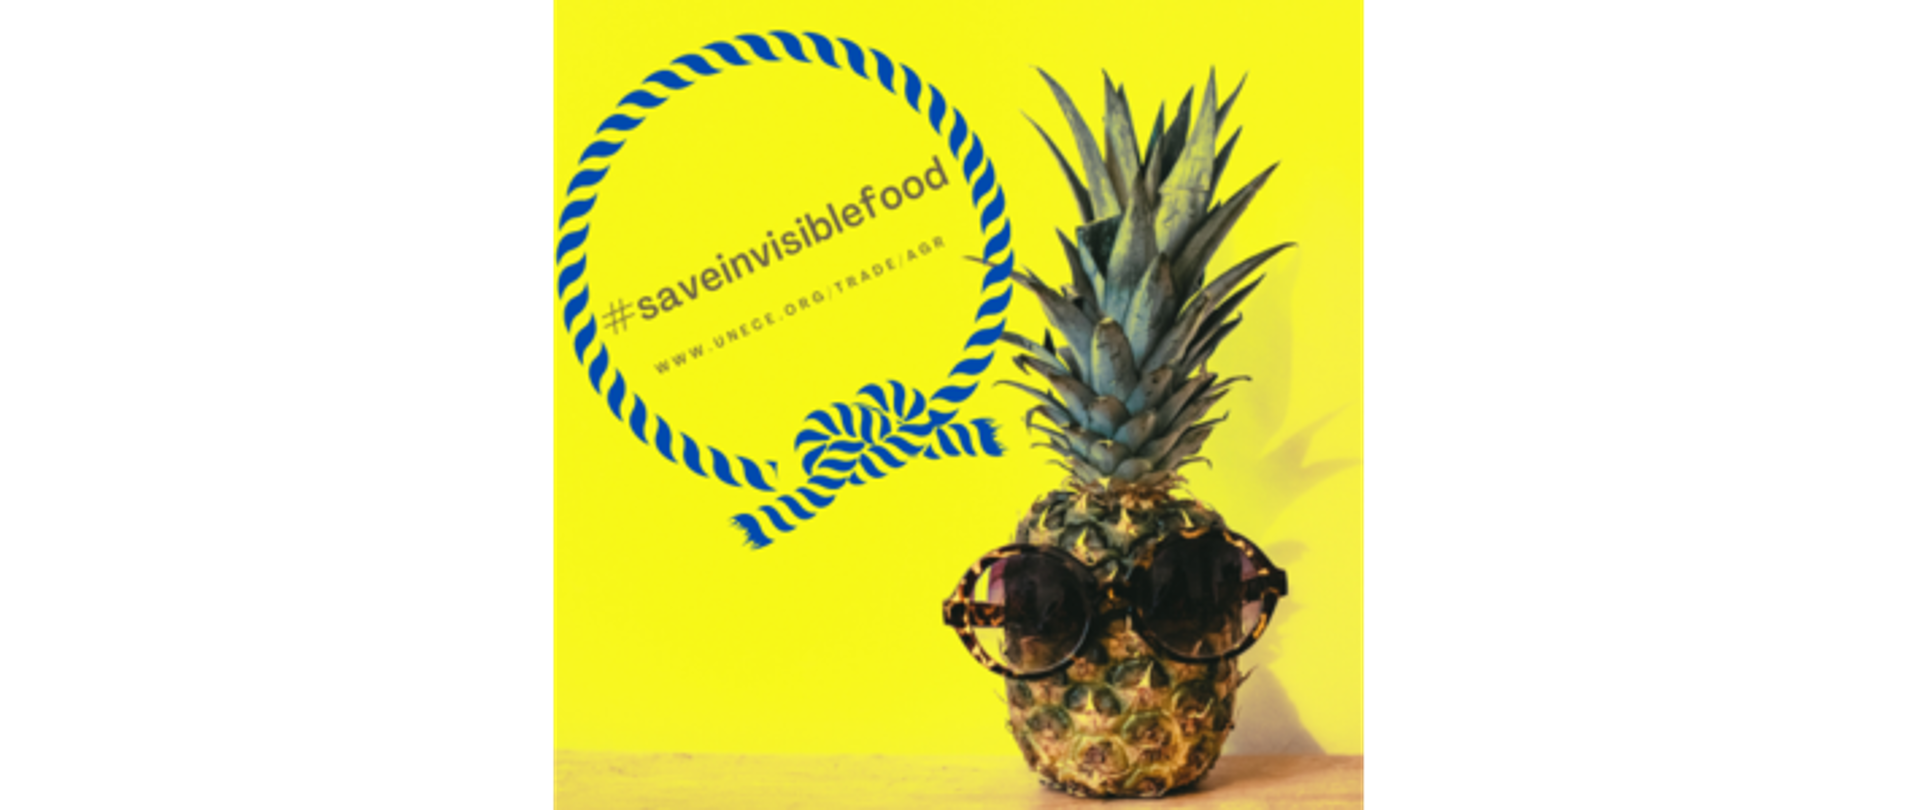 Z prawej strony zdjęcia znajduje się ananas, w lewym górnym rogu okrąg z napisem w środku #saveinvisiblefood oraz adresem strony www.unece.org/trade/agr